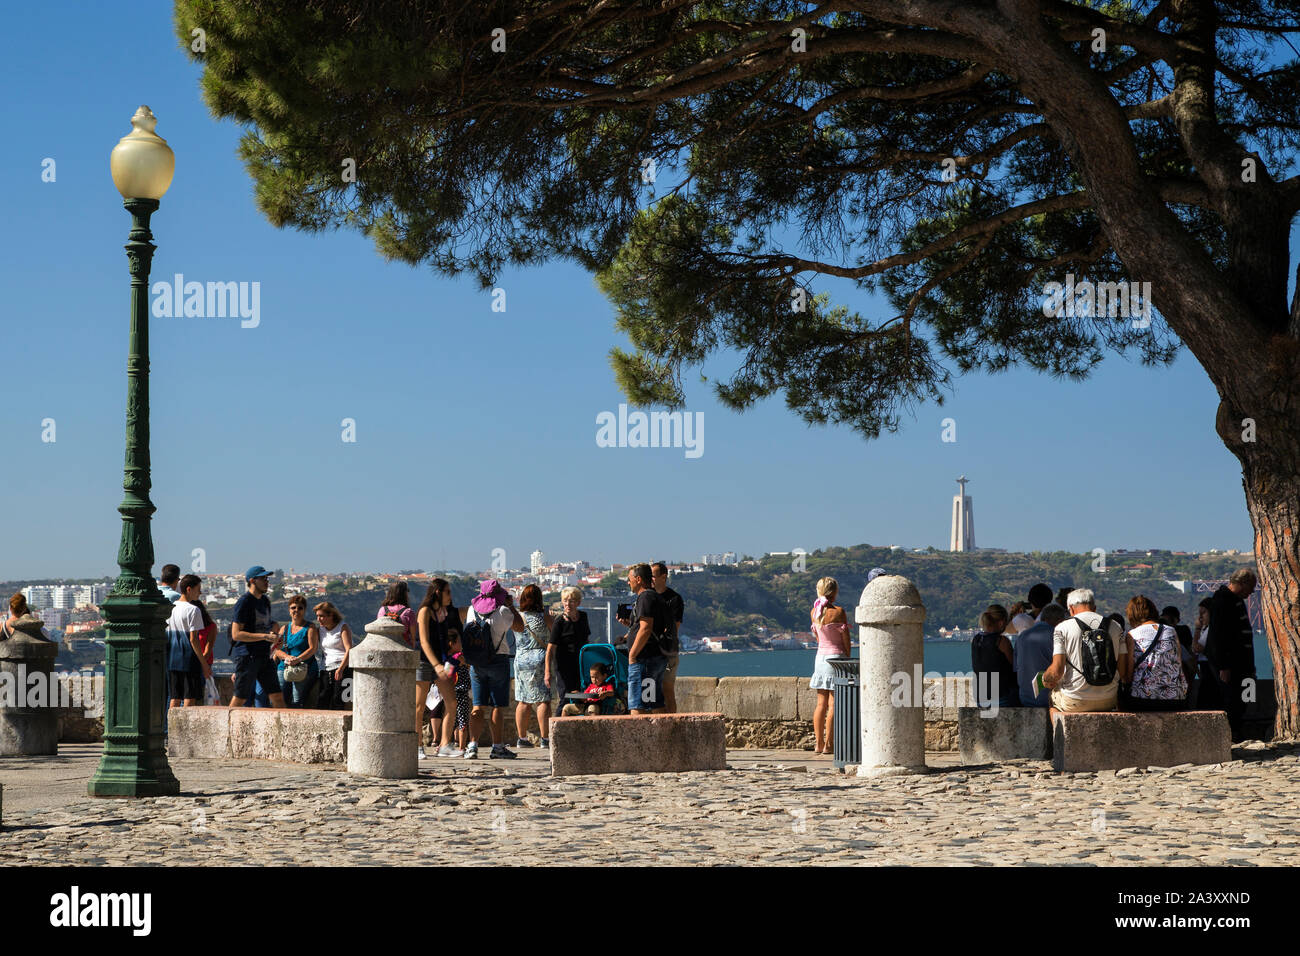 Viele Touristen an einem Aussichtspunkt auf dem Gelände von Sao Jorge (Castelo de Sao Jorge) in Lissabon, Portugal. Cristo Rei Monument ist im Hintergrund. Stockfoto